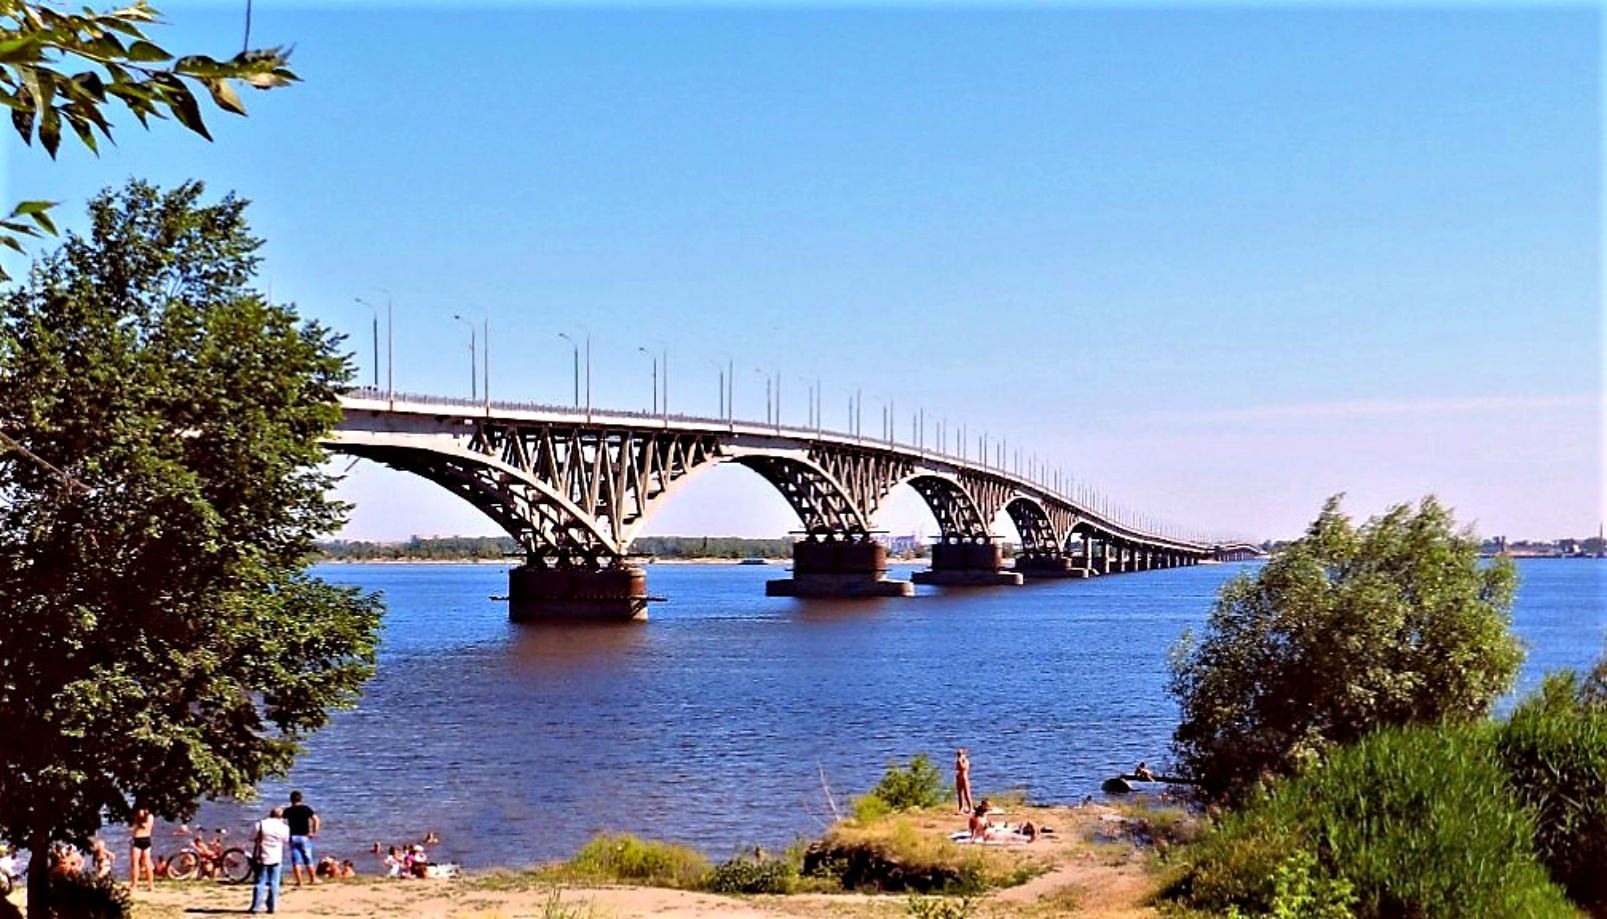 Летом были в саратове. Река Волга Саратов. Река Волга Саратов Энгельс. Волга мост Саратов. Река Волга Саратовский мост.